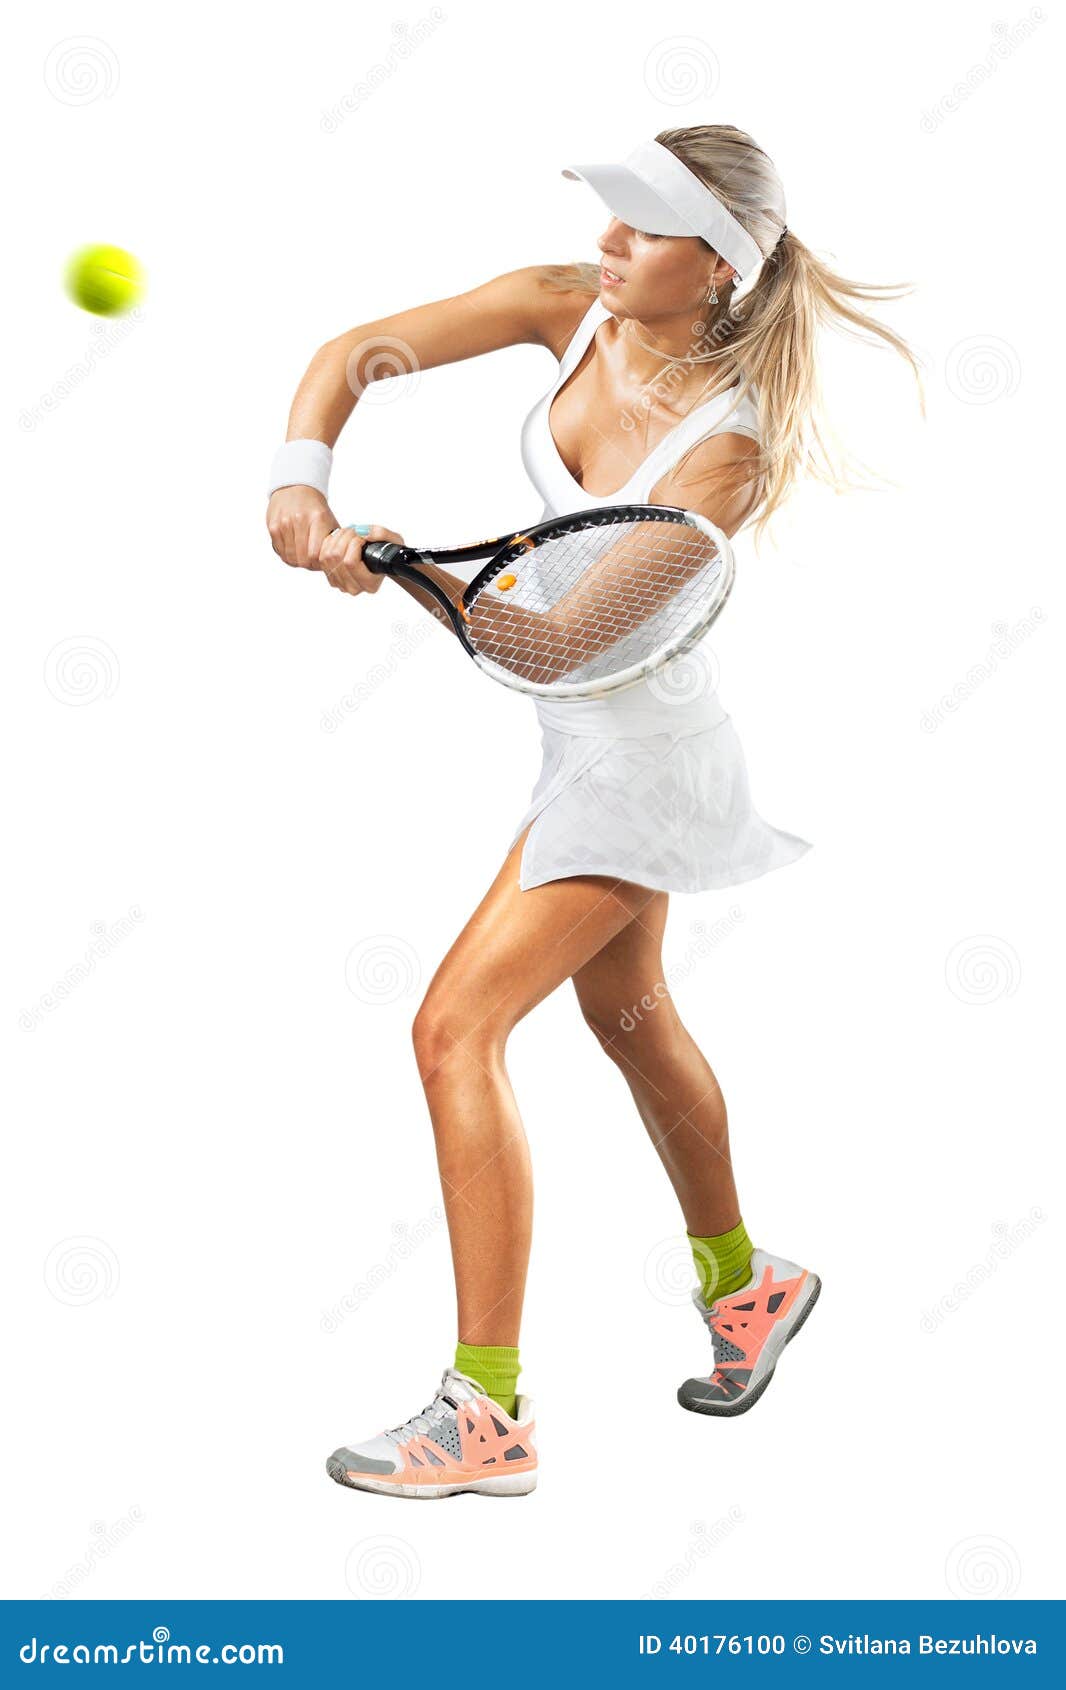 ropa para jugar tenis dama